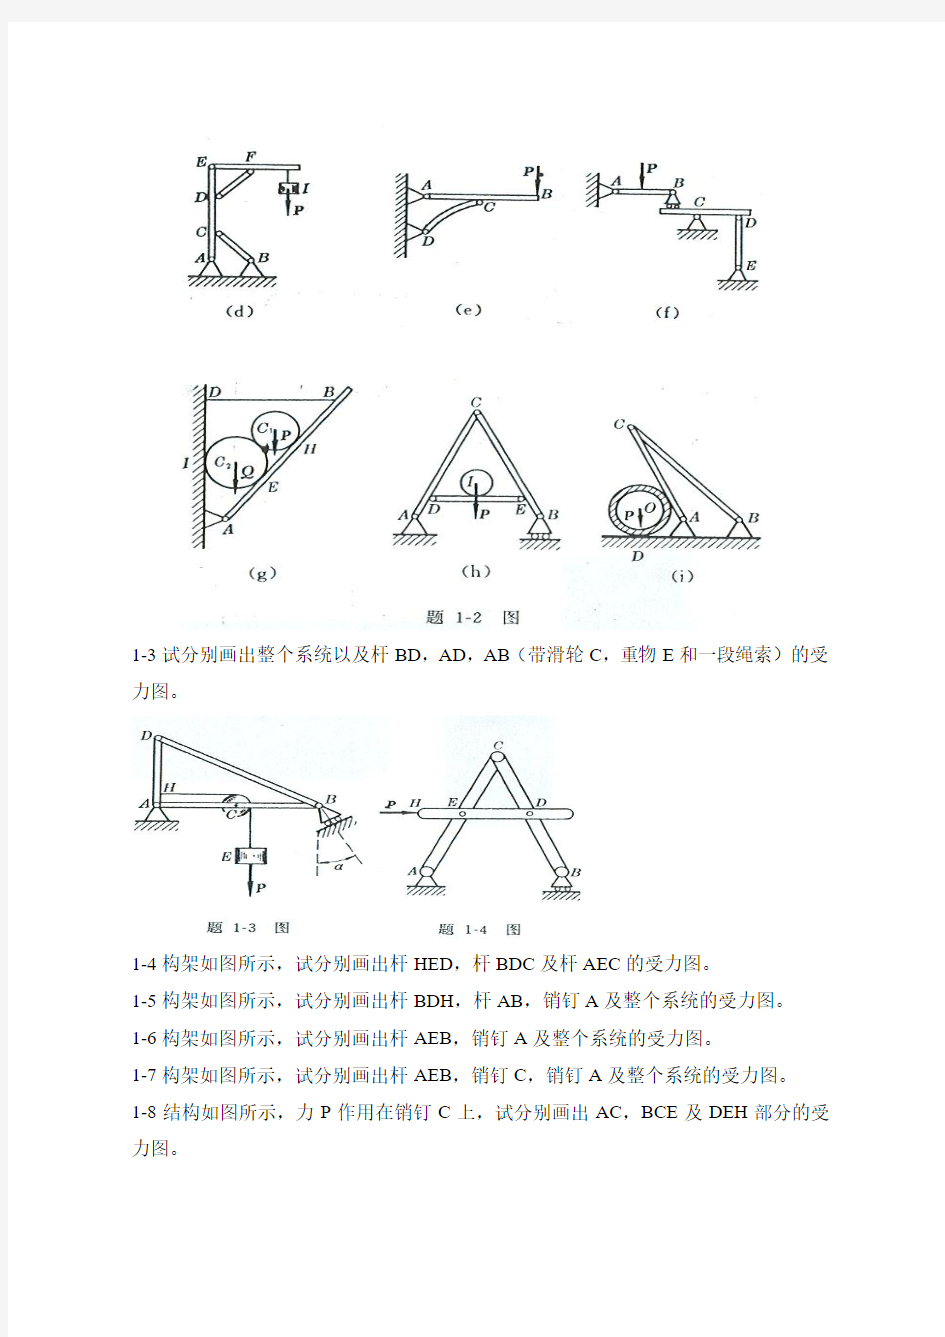 工程力学--静力学(北京科大、东北大学版)第4版_第一章___第l六章习题答案